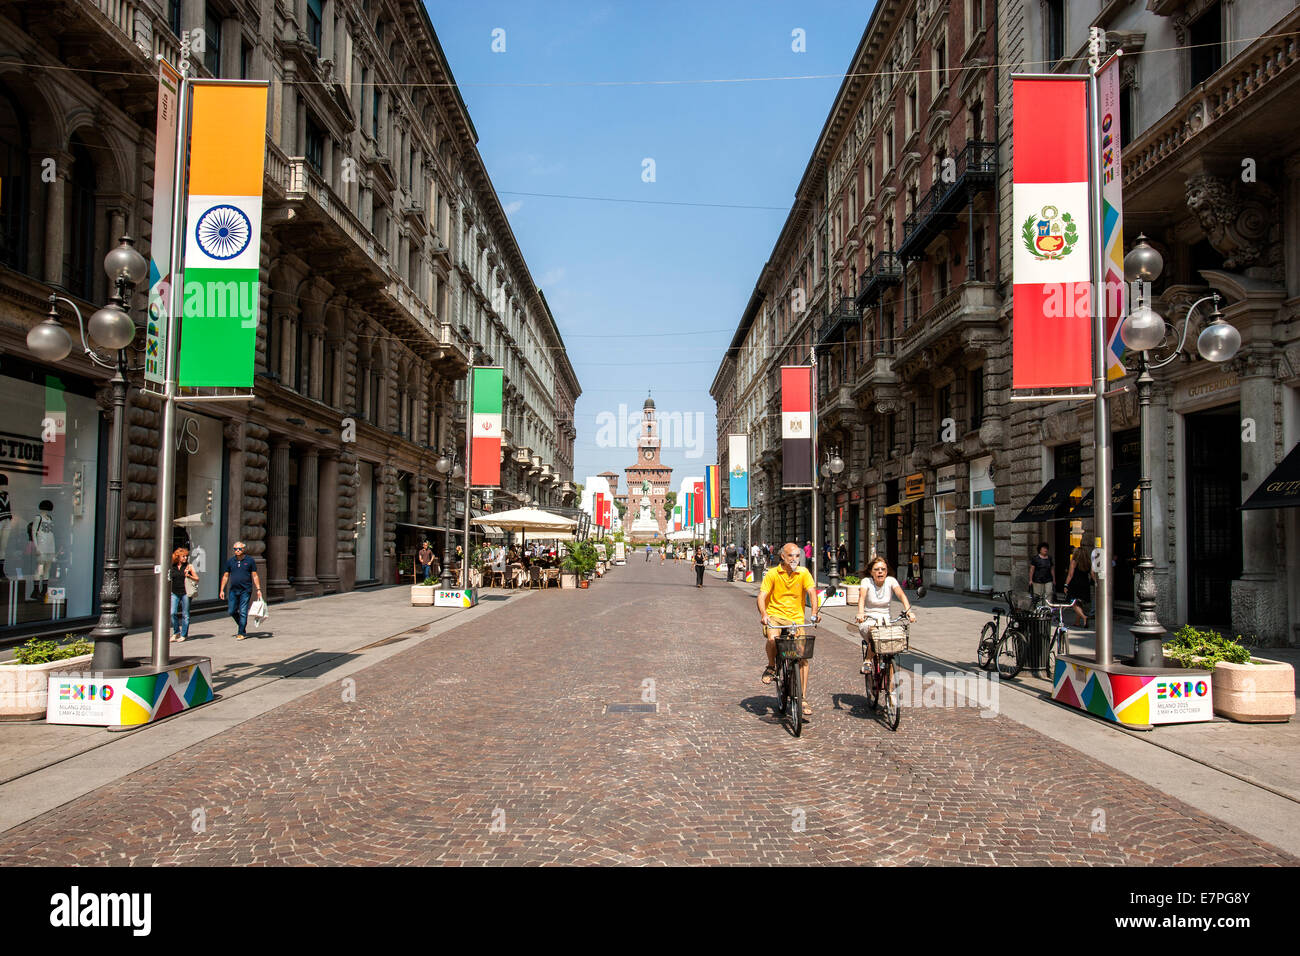 Milano, Milano Expo 2015, EXPOGATE, viaggi, fiera universale, esposizione, Via Dante, Castello Sforzesco, città, Lombardia, Italia Foto Stock